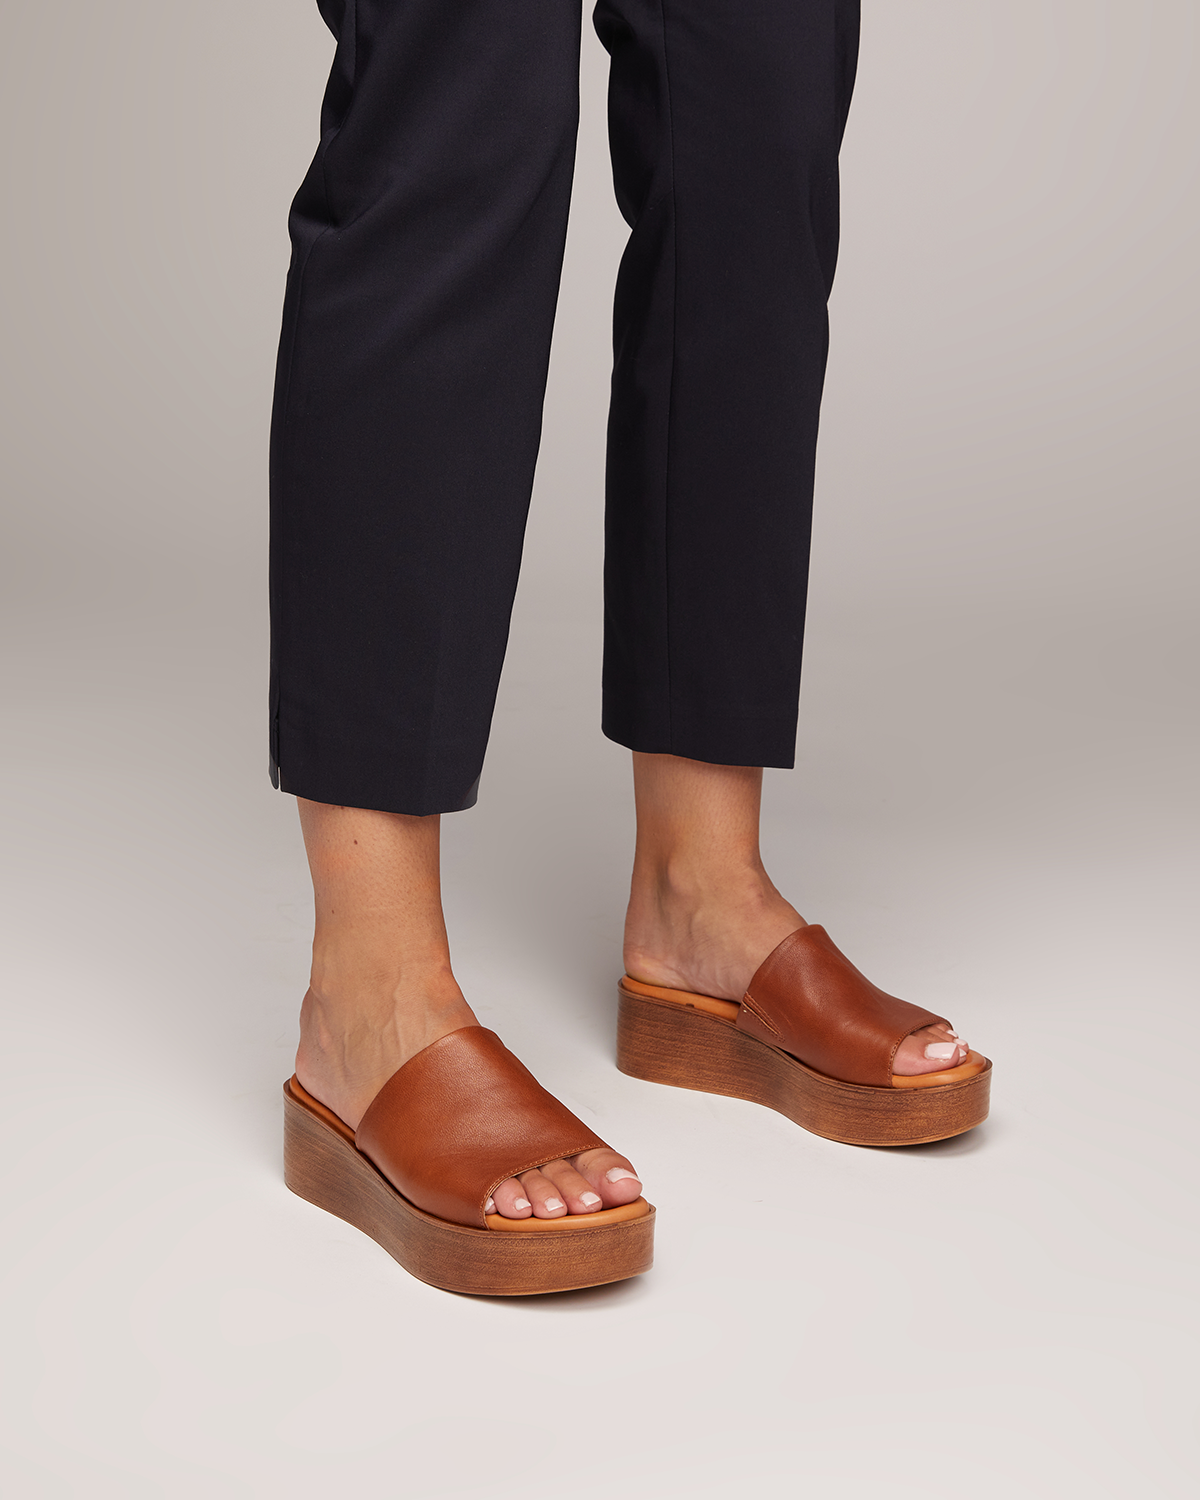 Just Because Shoes Rosa Brandy | Leather Flatform | Slides | Sandals